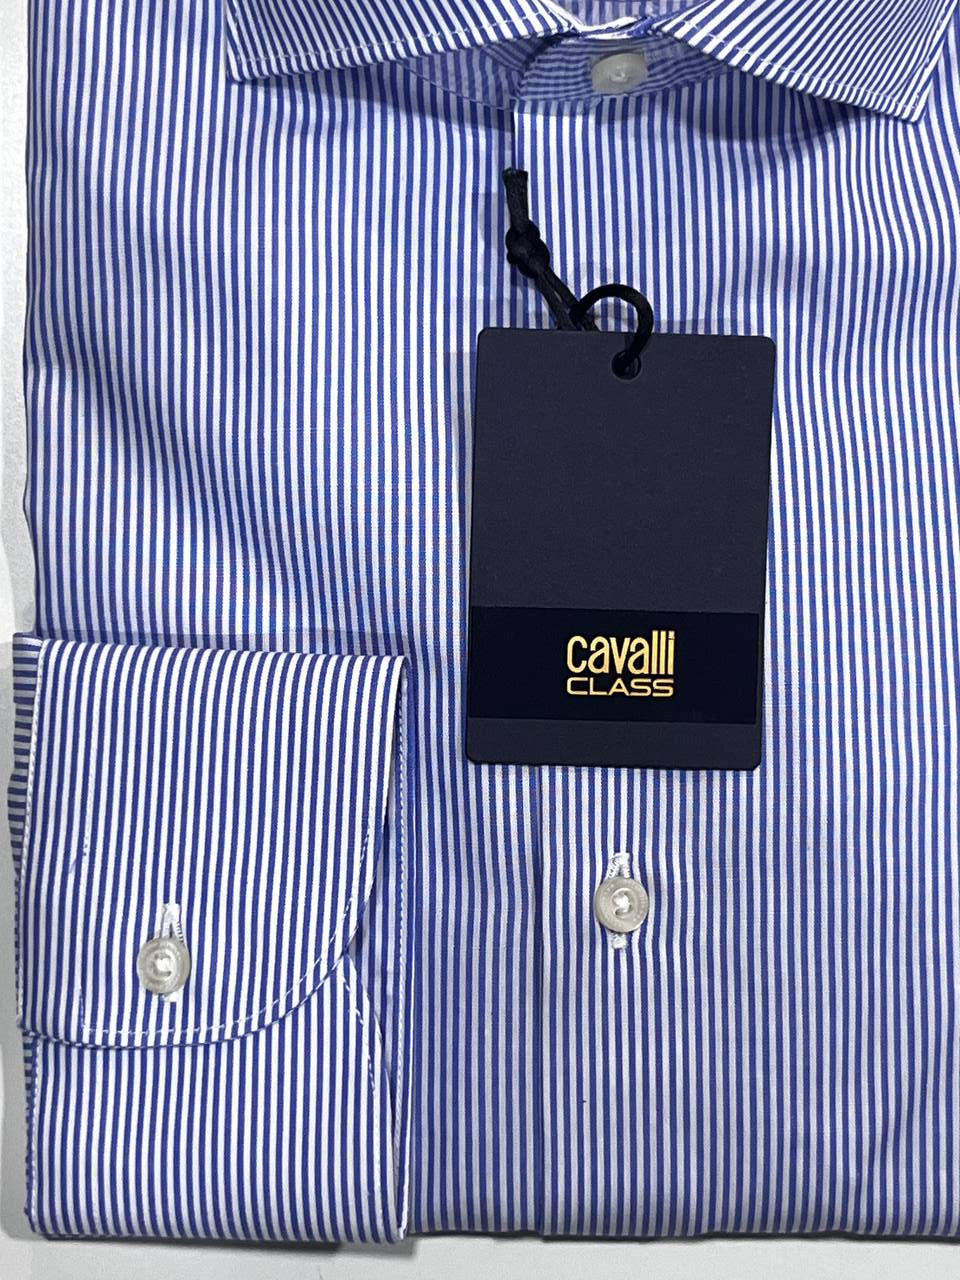 Cavalli Class Men's Shirt